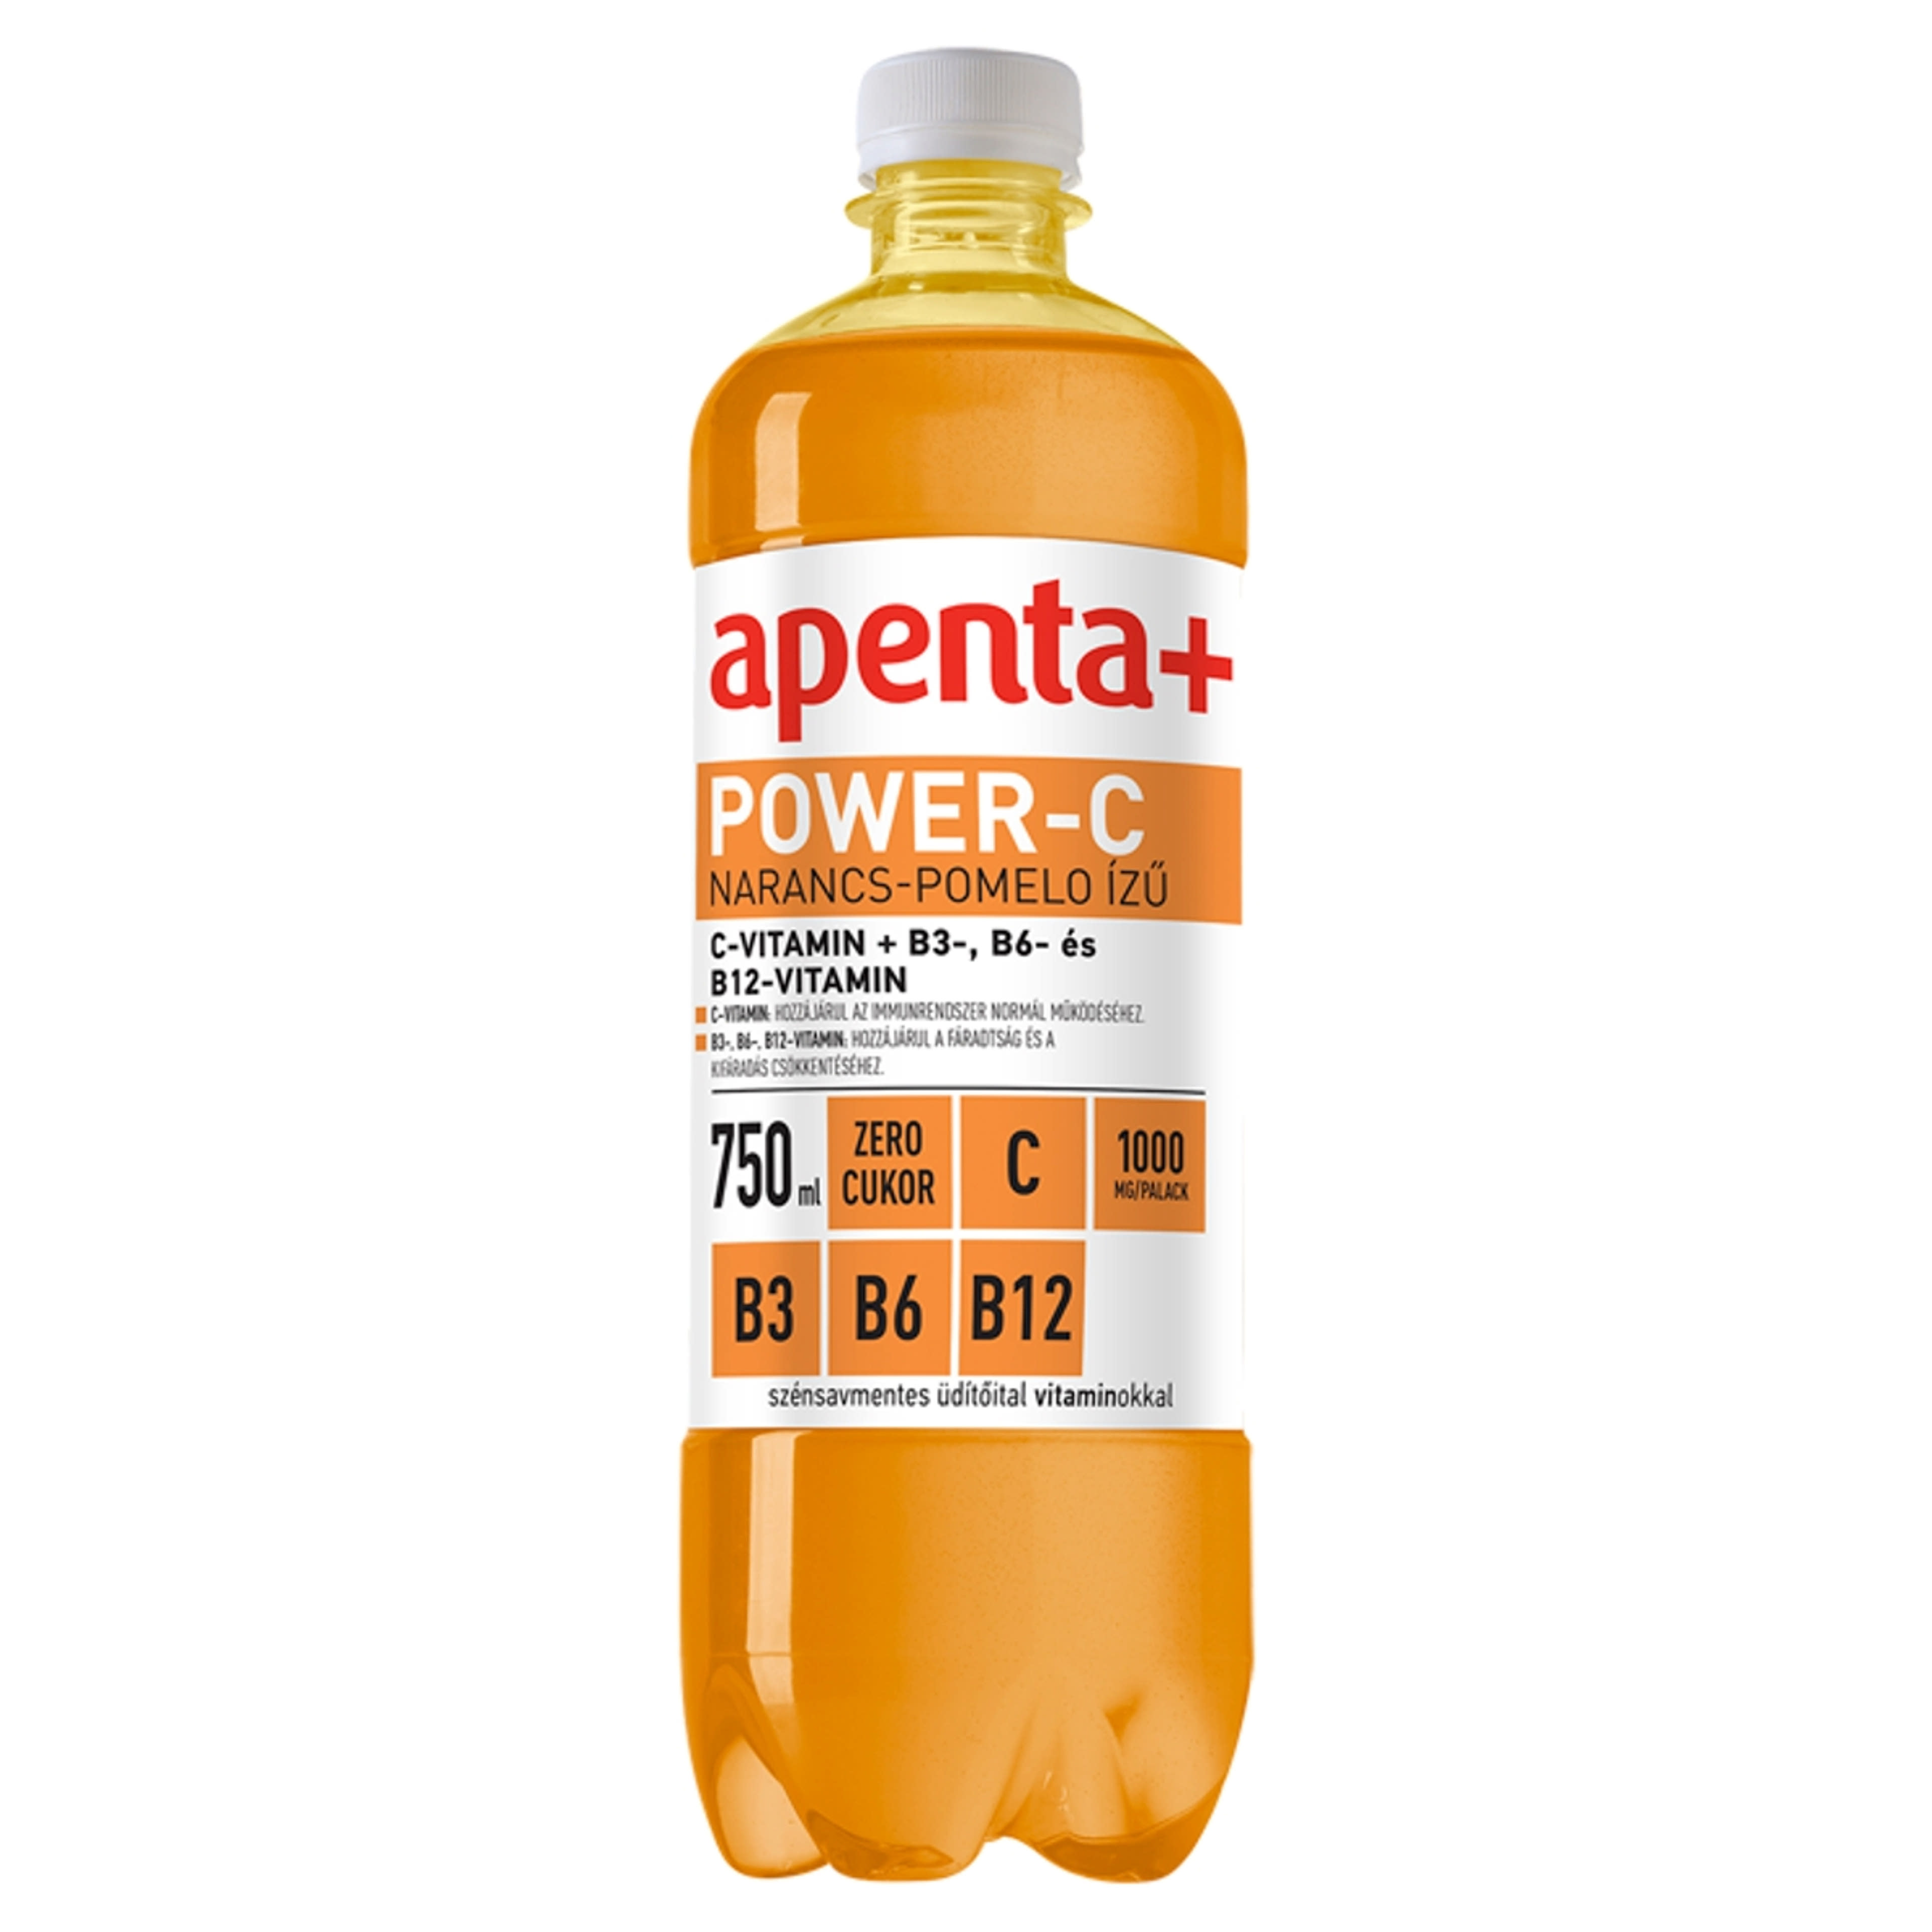 Apenta+ Power szénsavmentes üdítőital vitaminokkal narancs-pomelo ízű - 750 ml